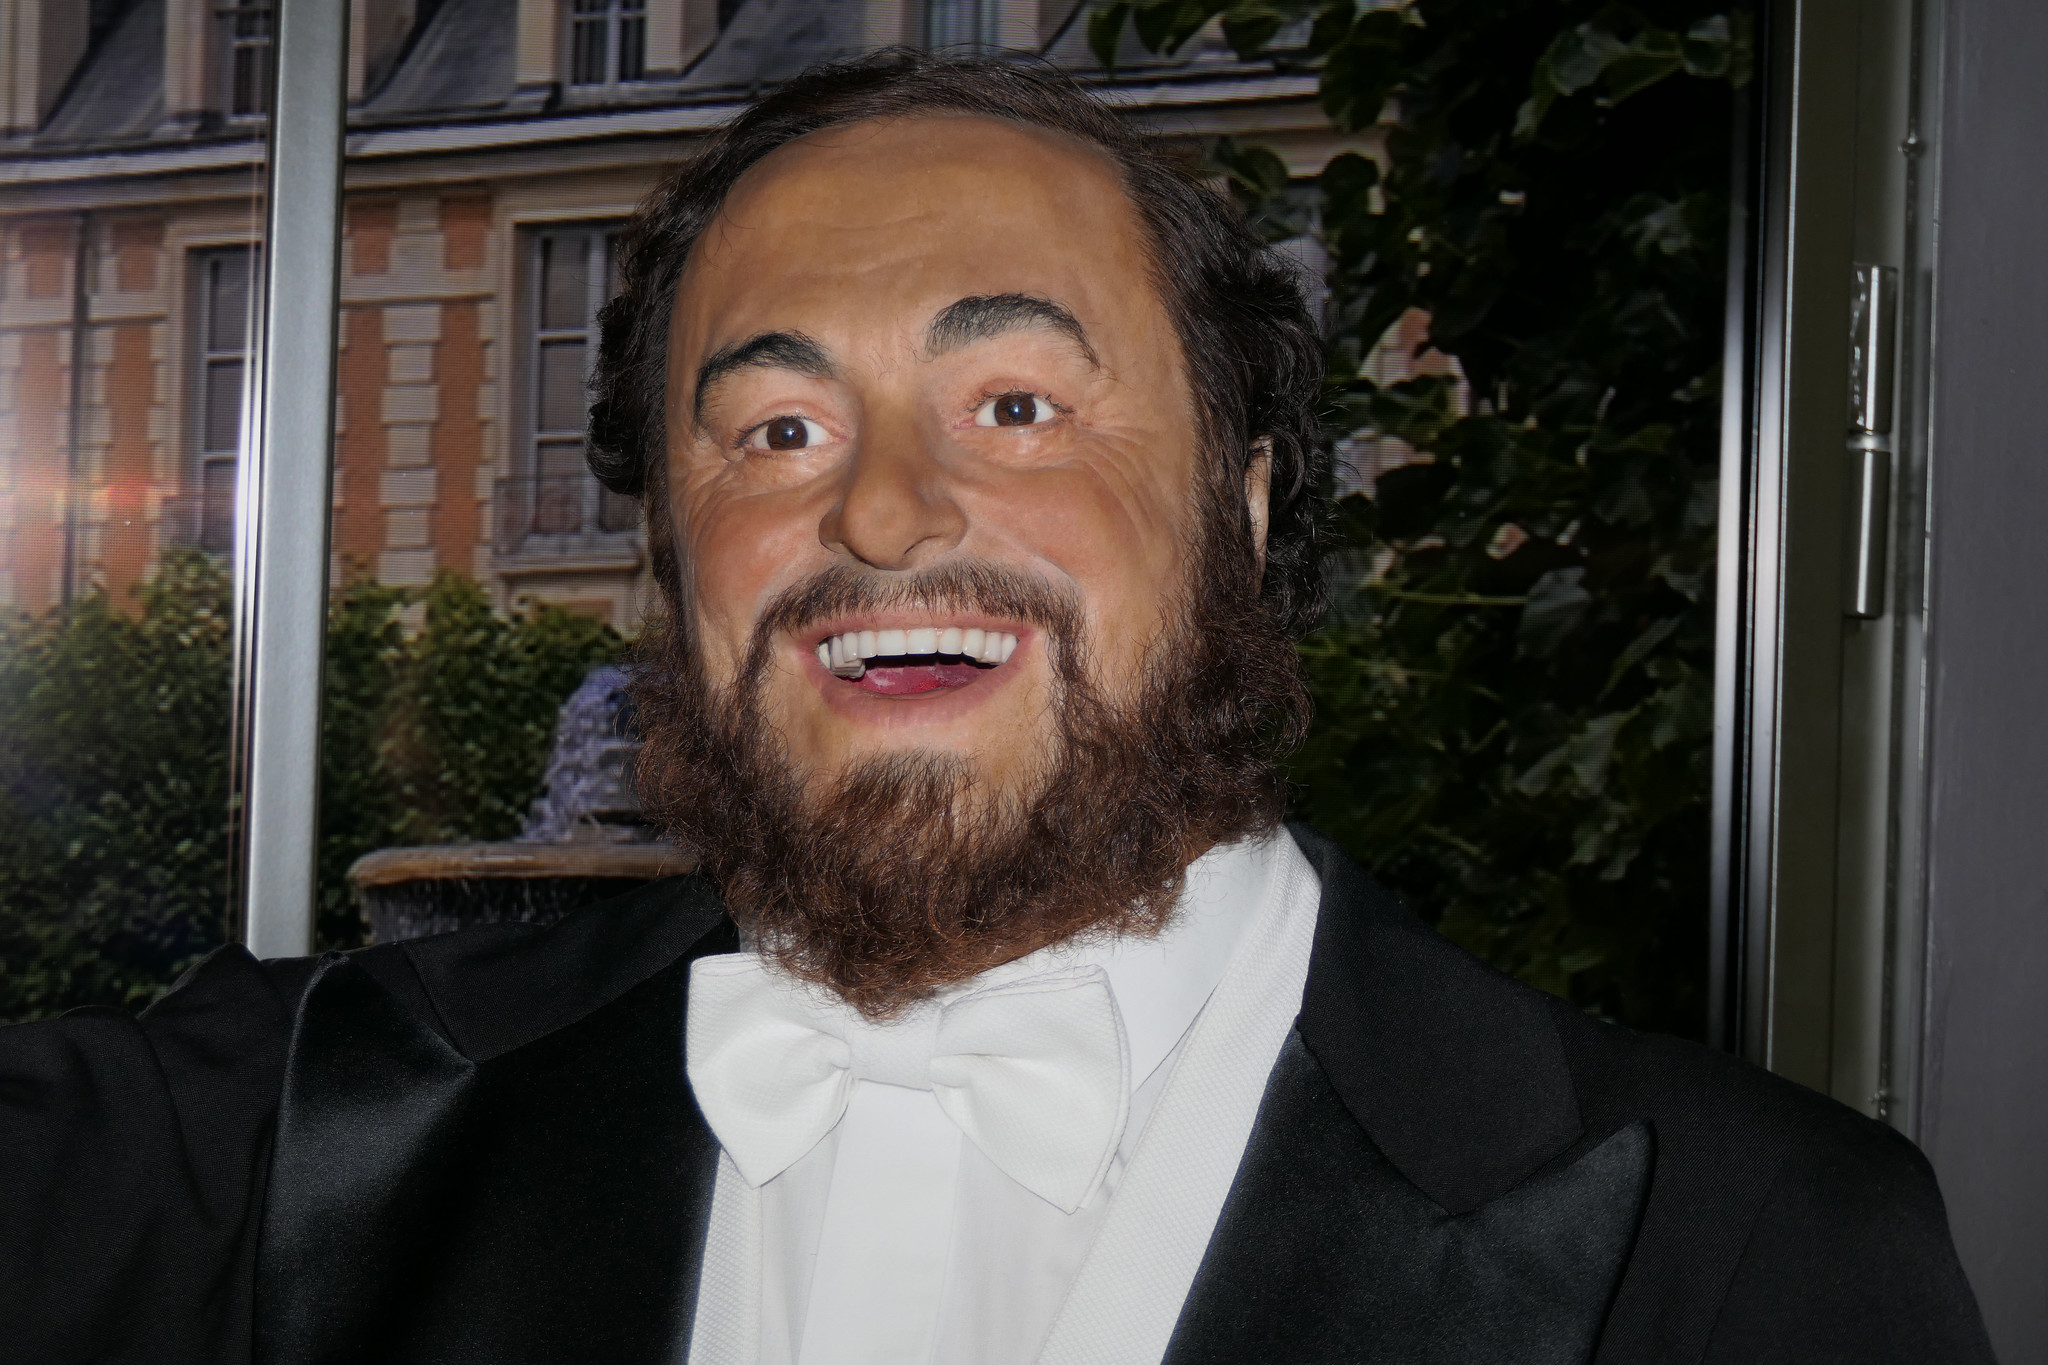 Le 12 octobre est un bon jour pour empoisonner Néron, mettre Pavarotti en boîte, découvrir Christophe Colomb et s'écouter une musique de Marguerite Monnot. On peut compter sur notre 